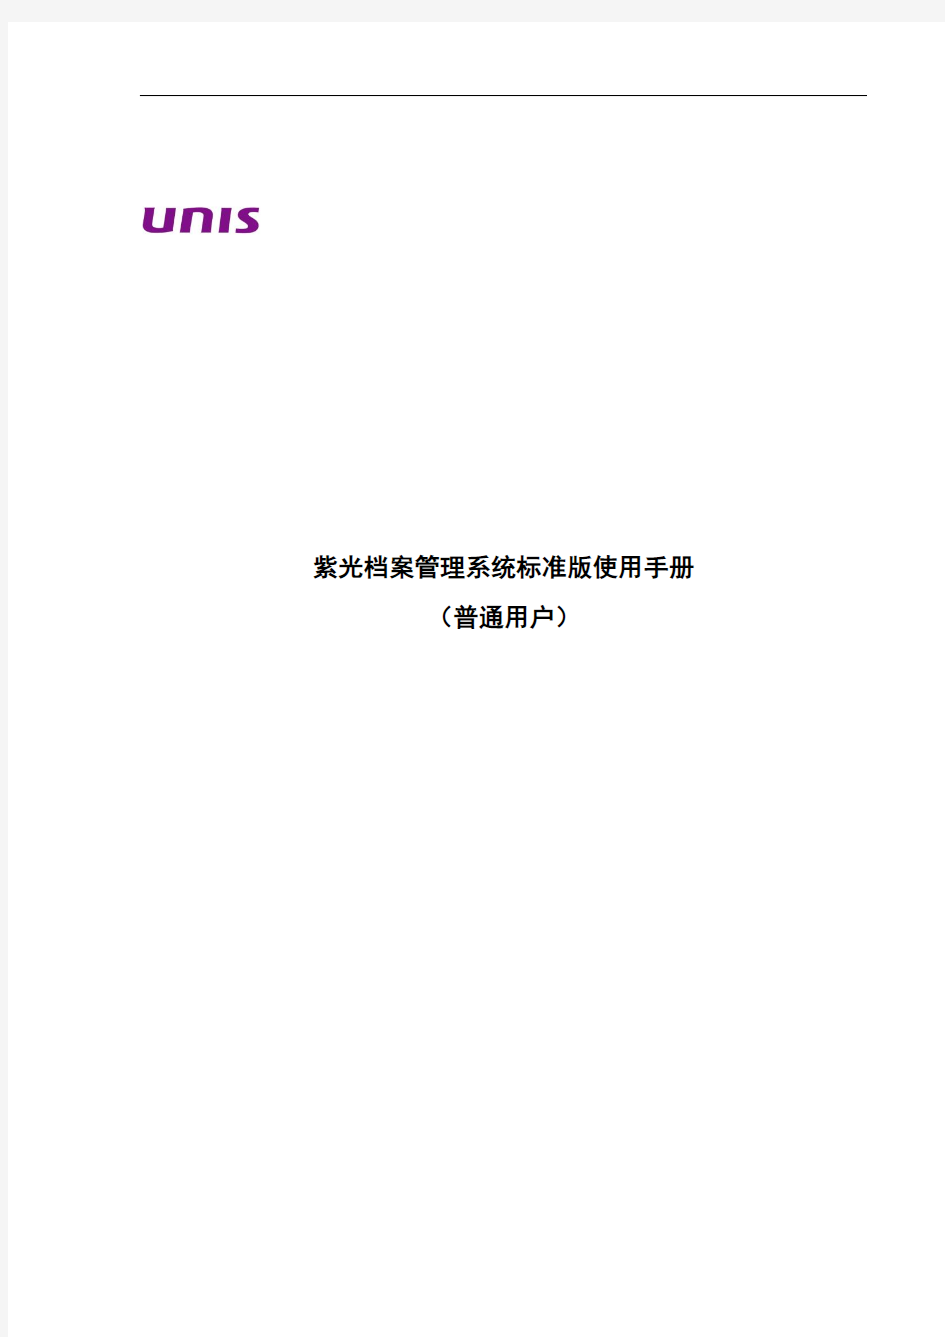 紫光档案管理系统使用手册